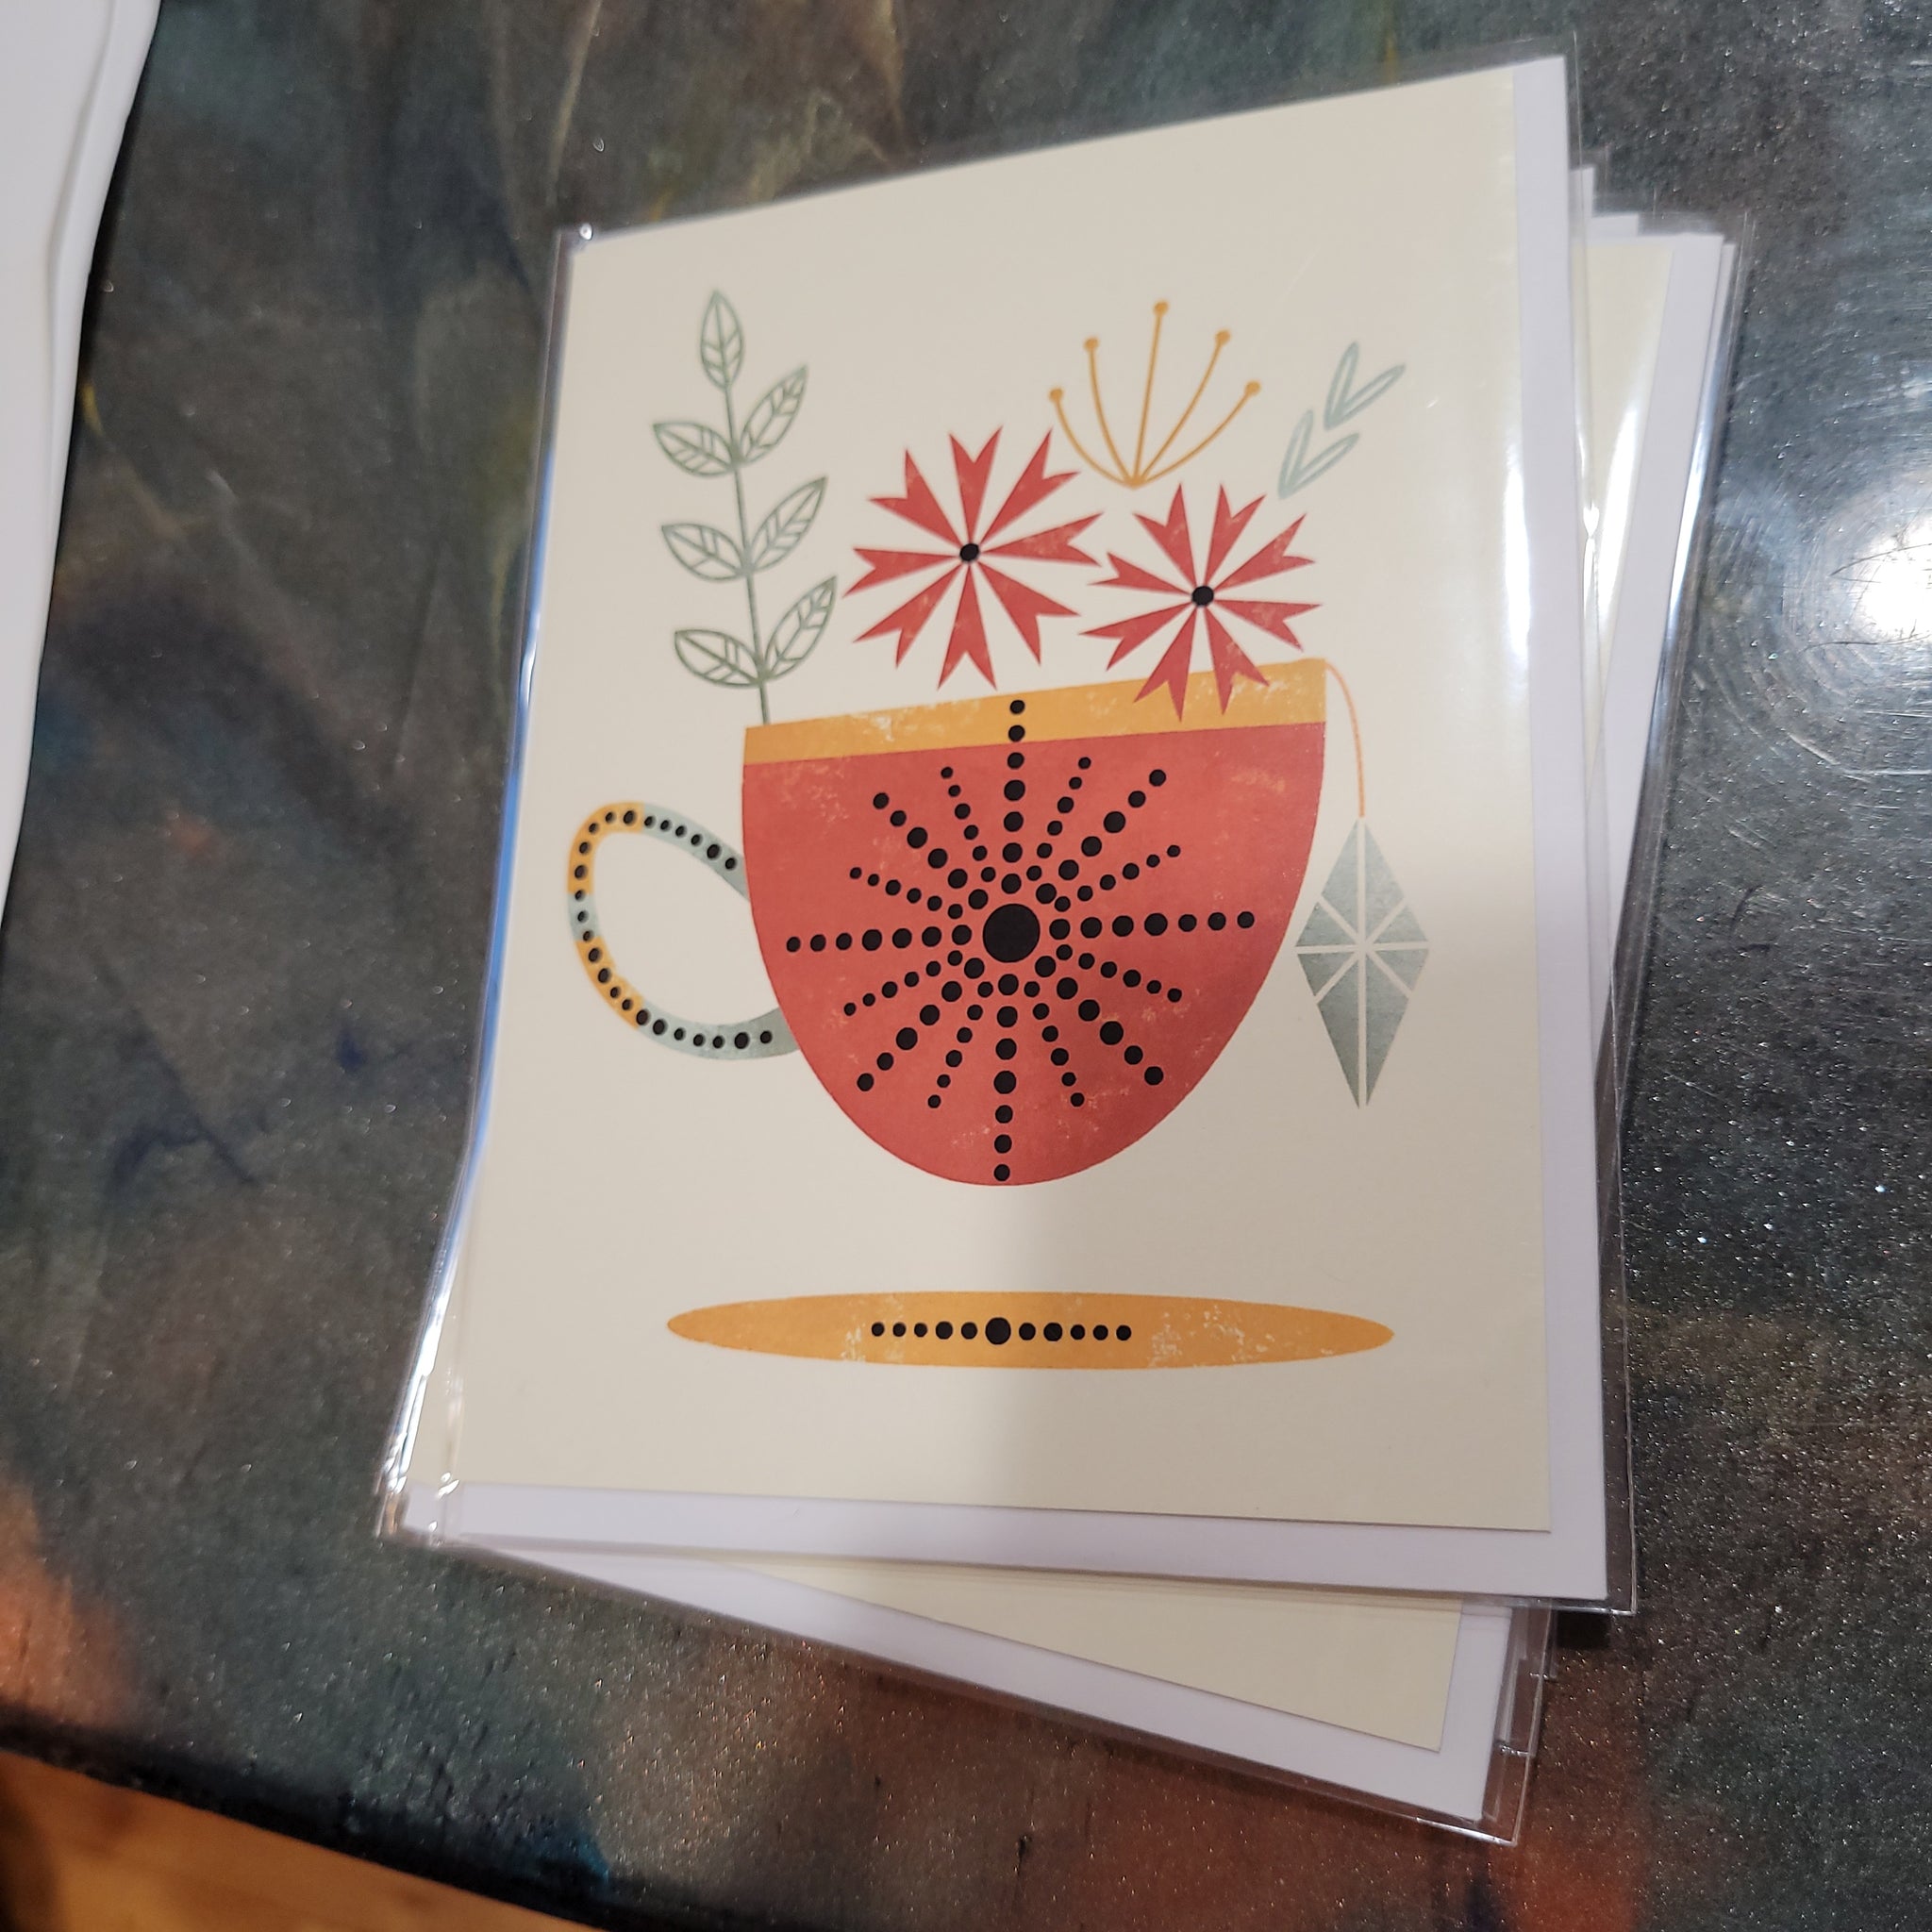 Orange Teacup Card